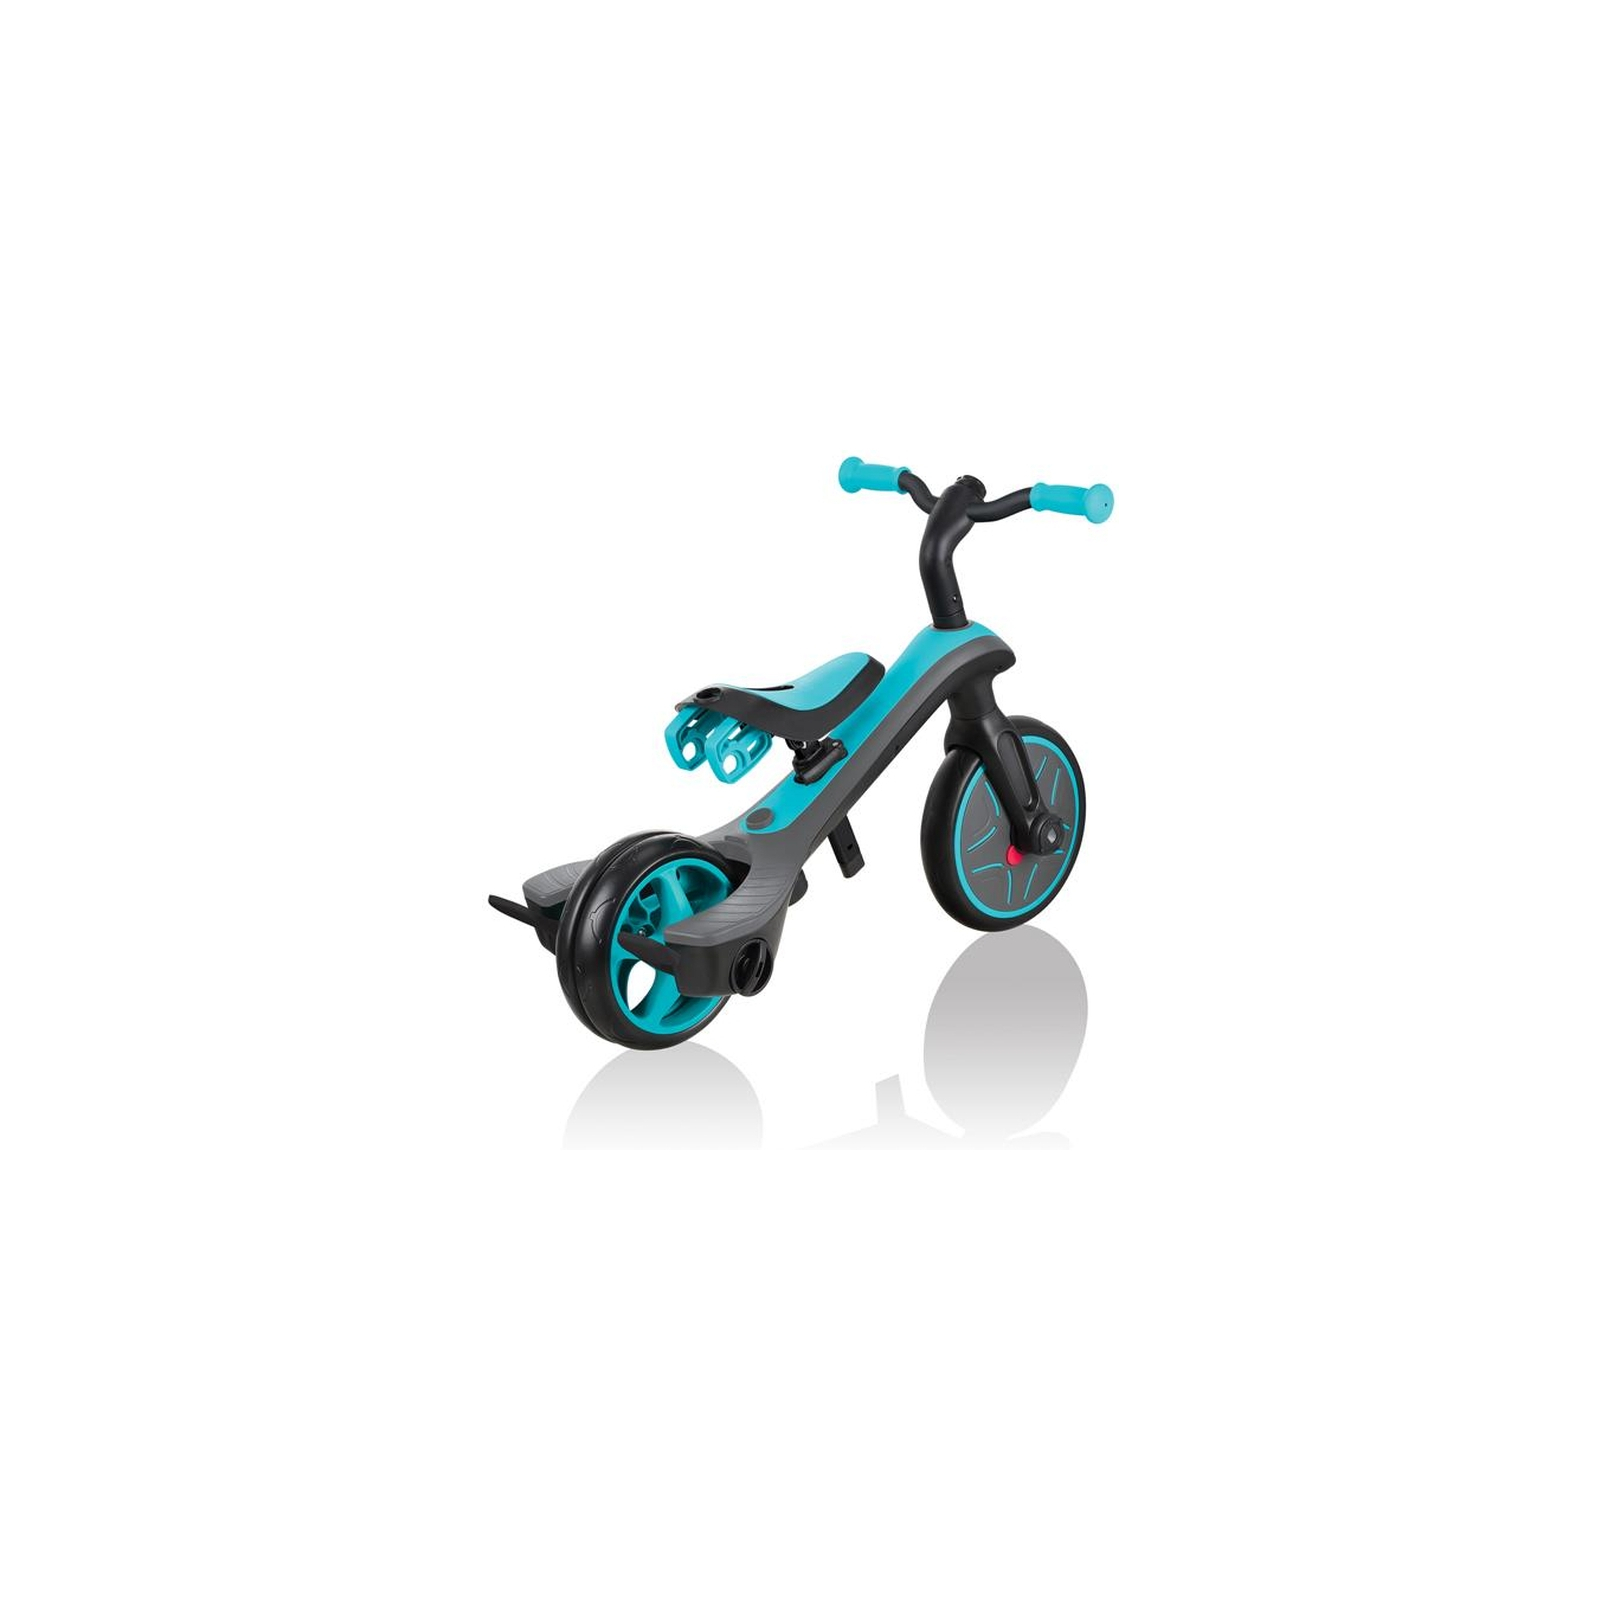 Детский велосипед Globber 4 в 1 Explorer Trike Teal Turquoise (632-105-3) изображение 7